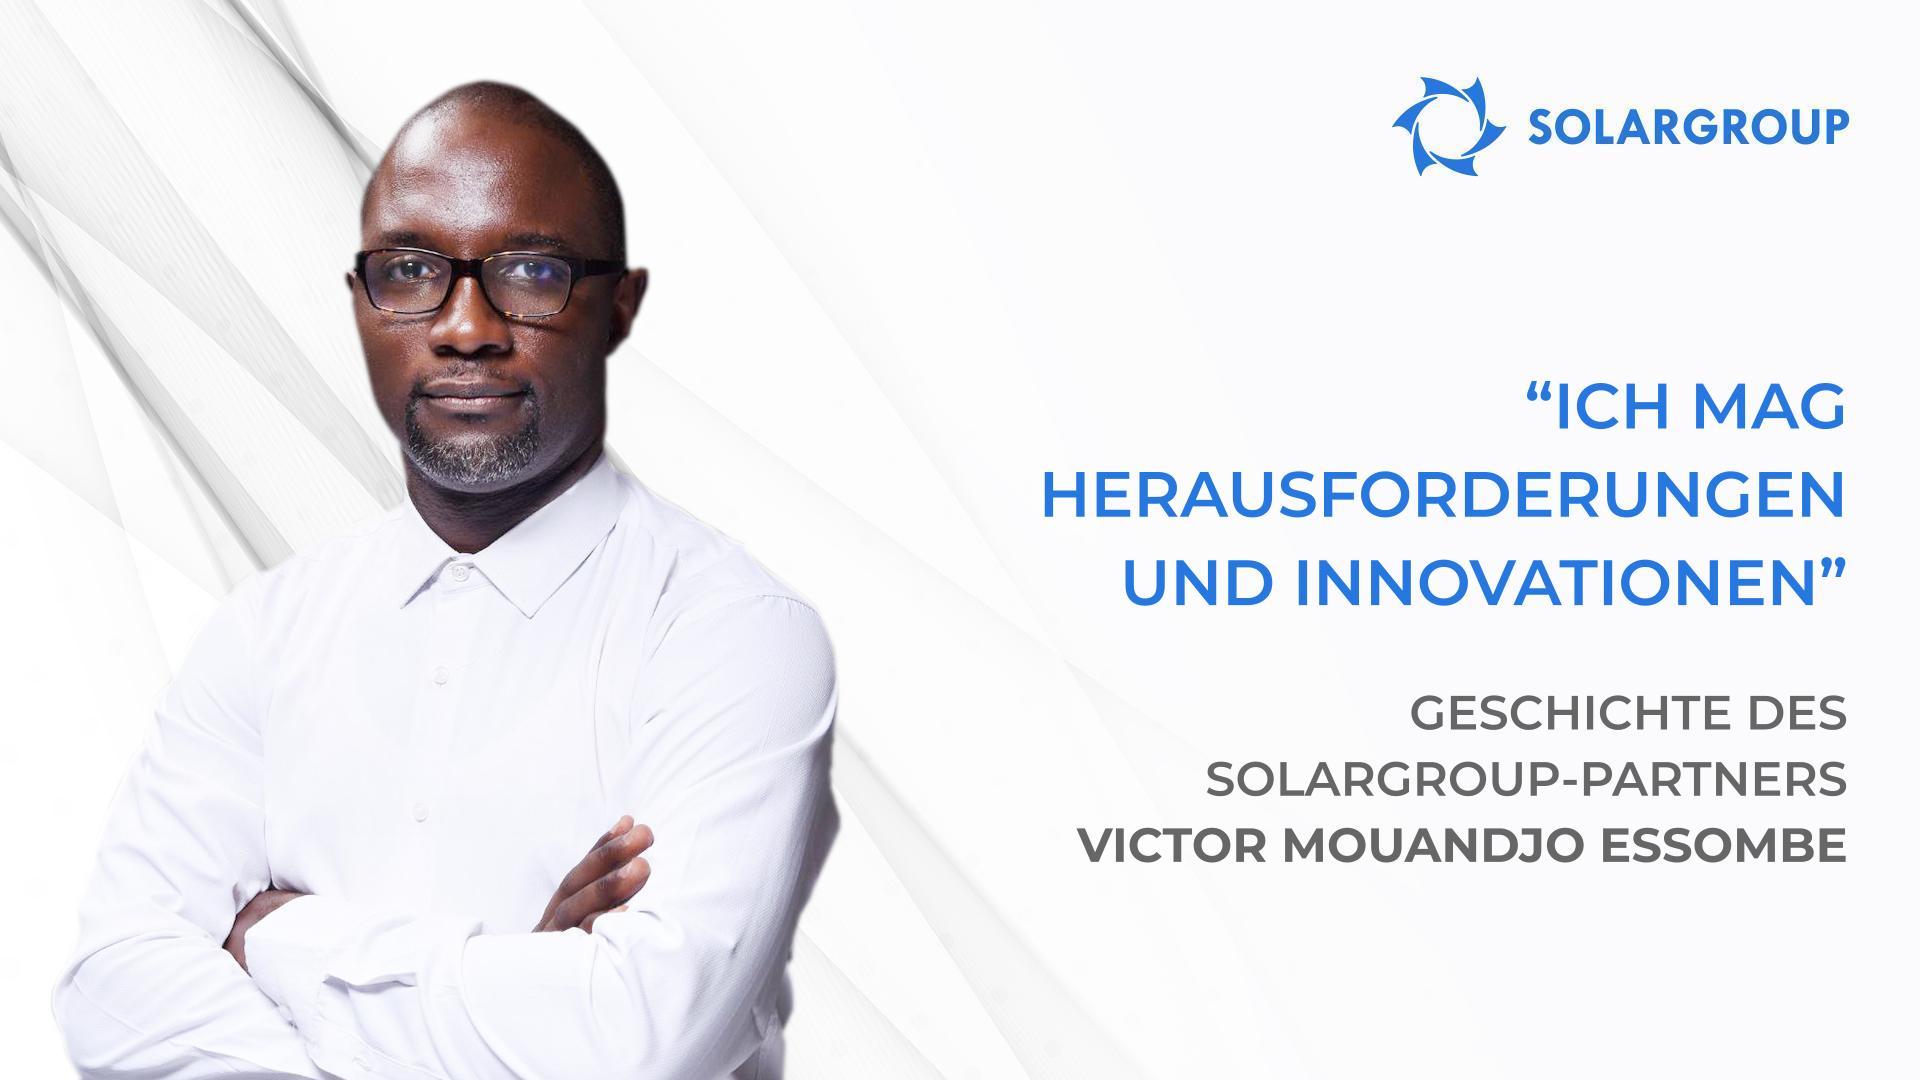 Ich und mein Team haben große Pläne | Geschichte des SOLARGROUP-Partners Viktor Mouandjo Essombe